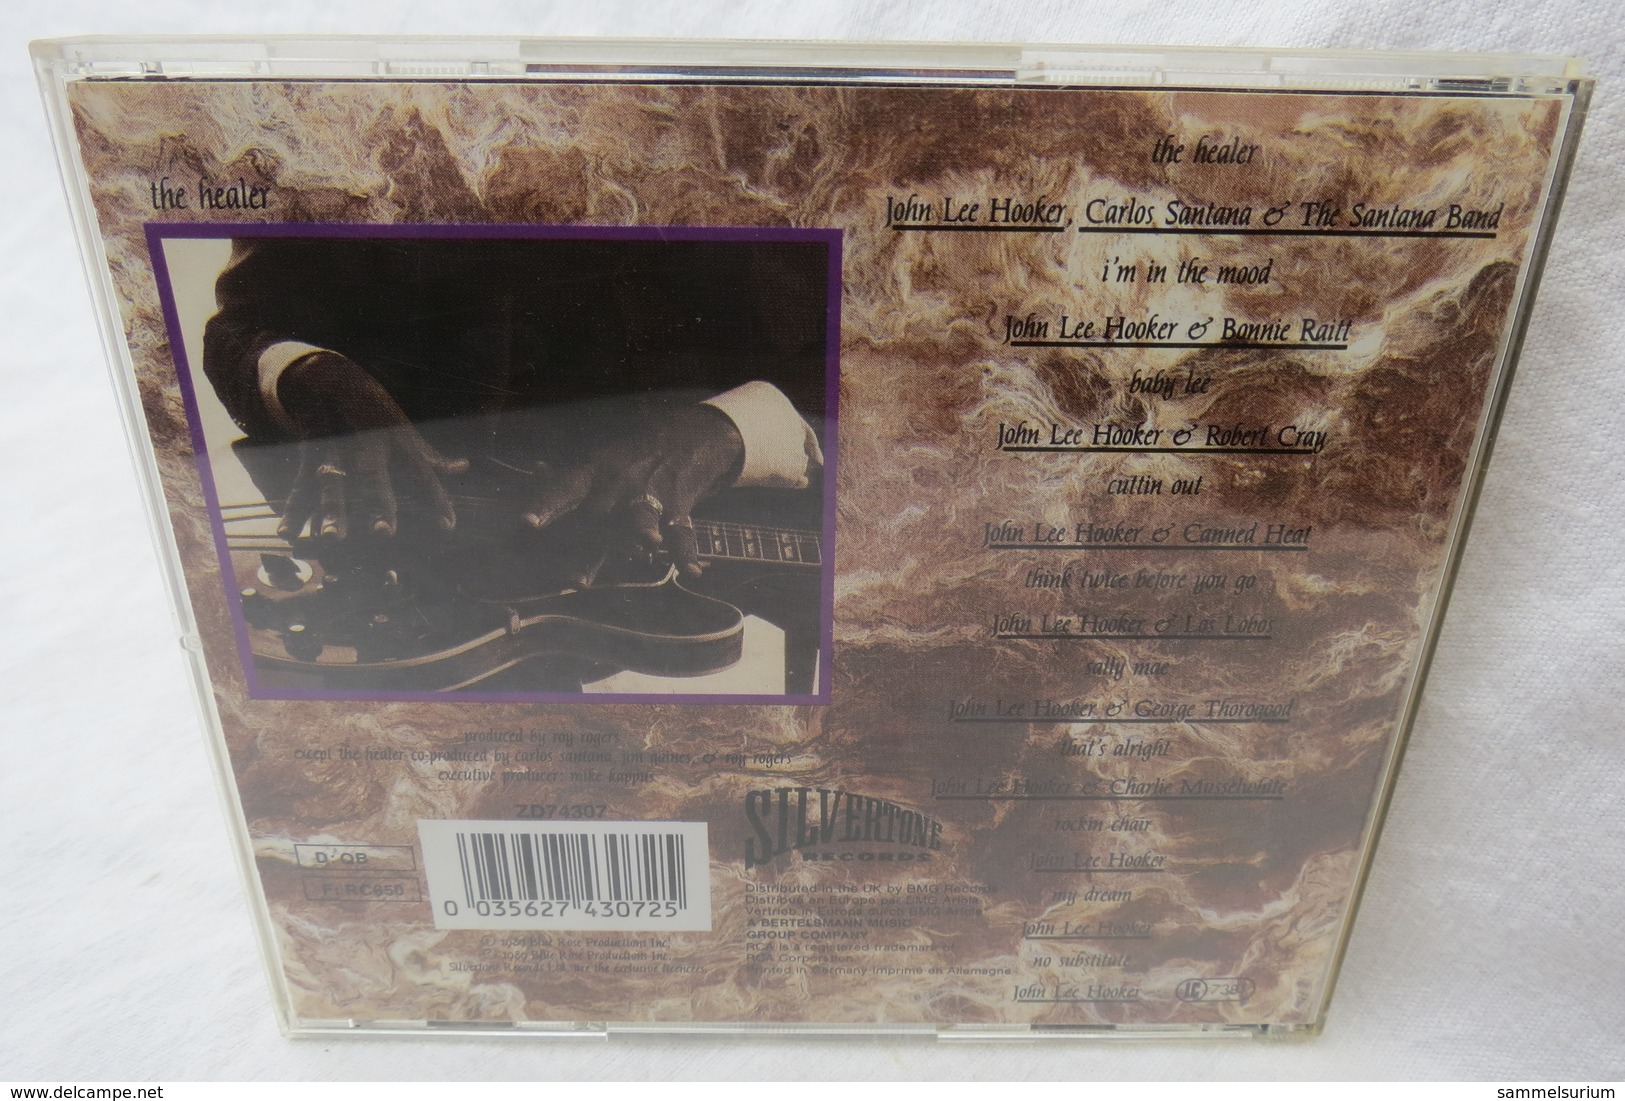 CD "John Lee Hooker" The Healer - Blues